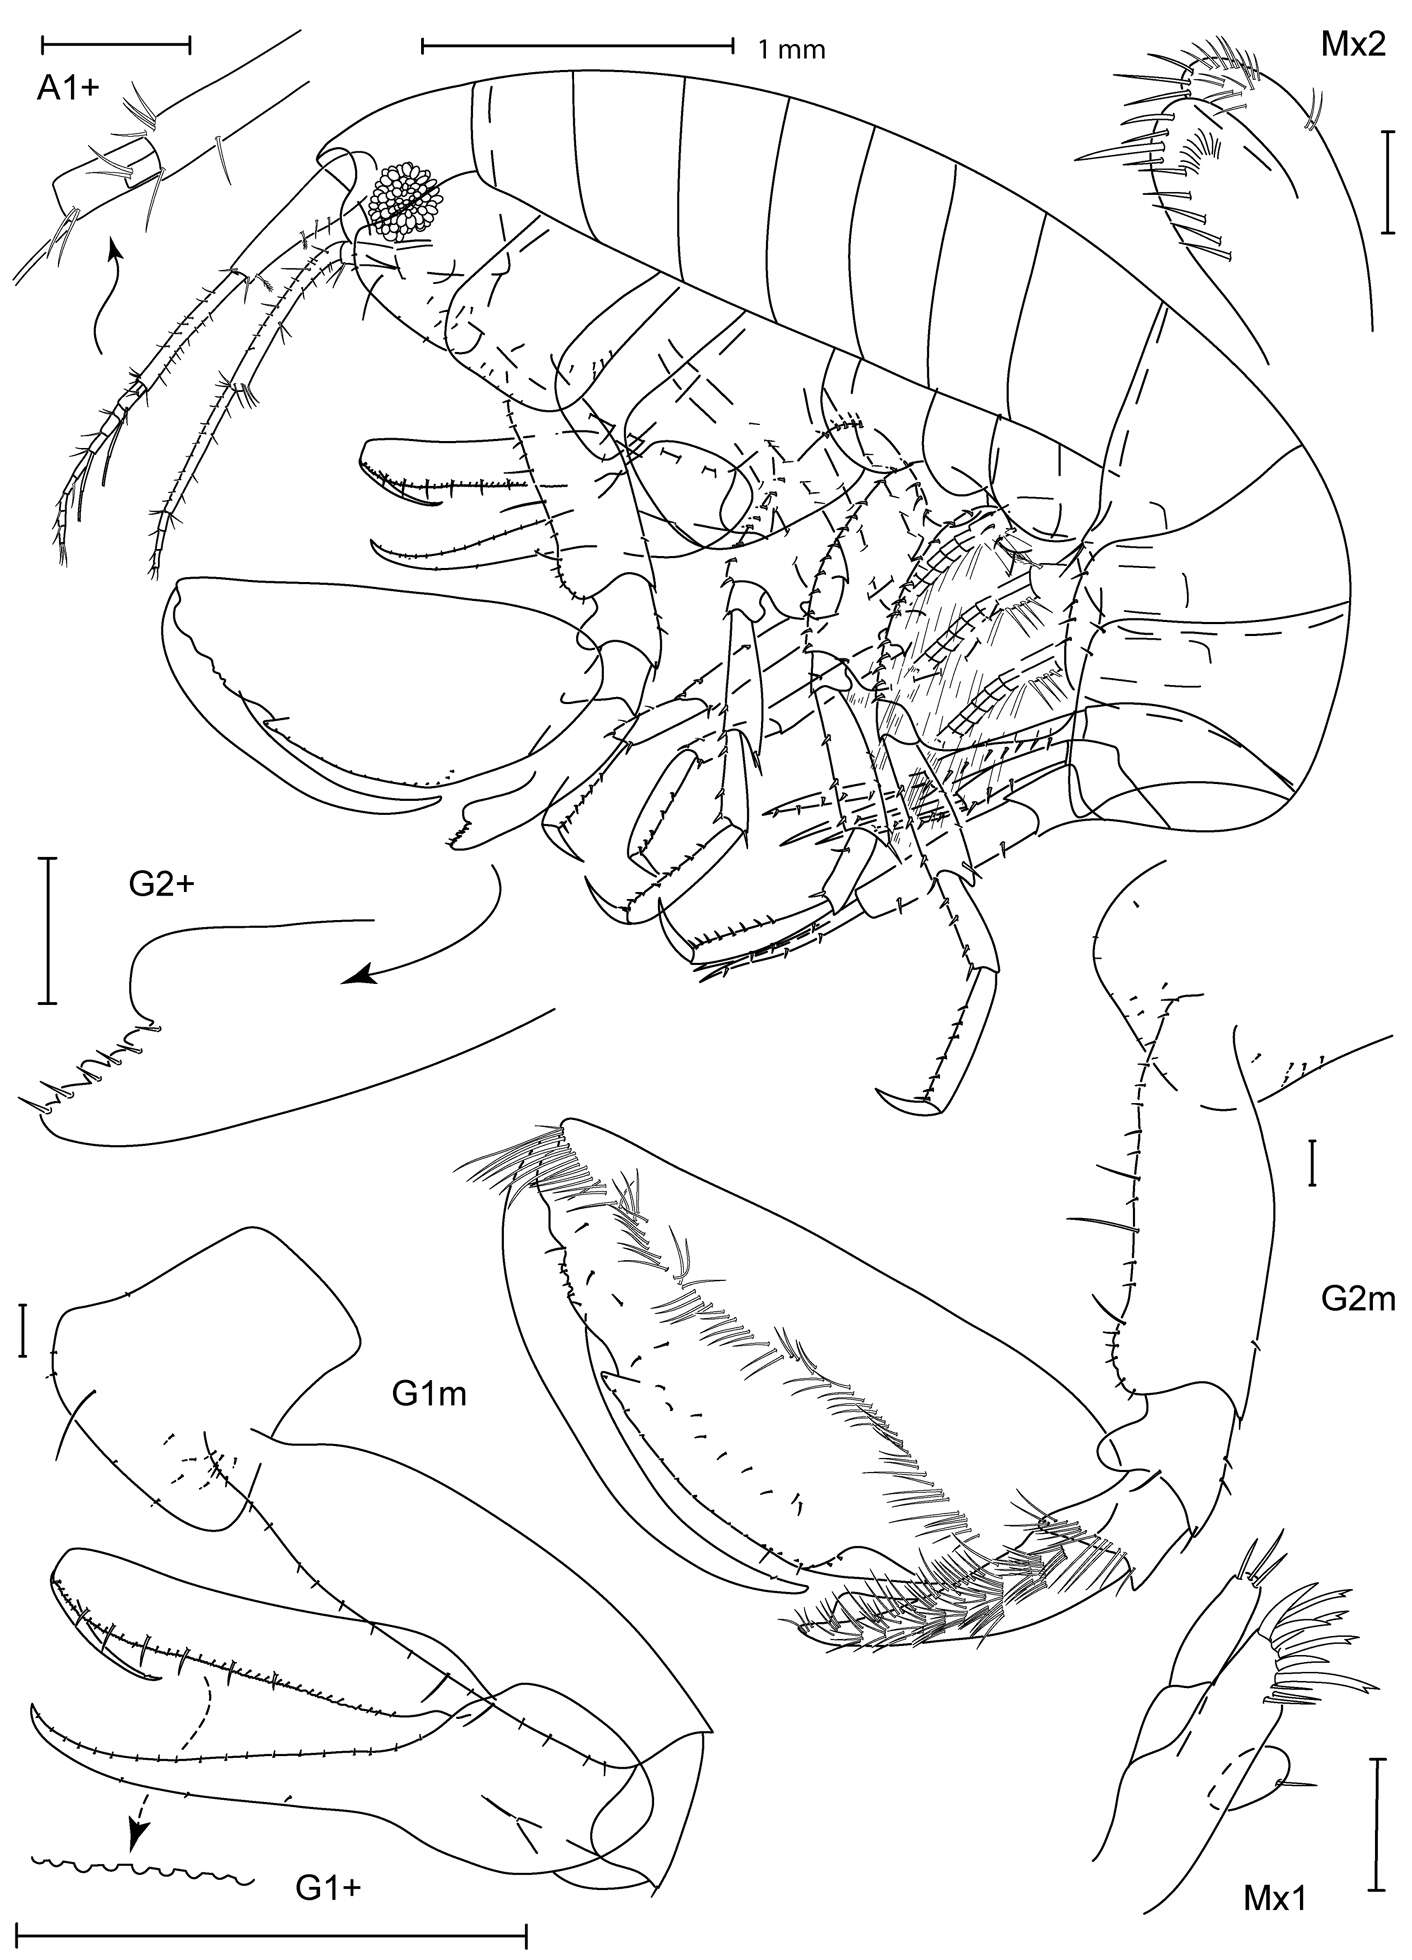 Image of Leucothoidea Dana 1852